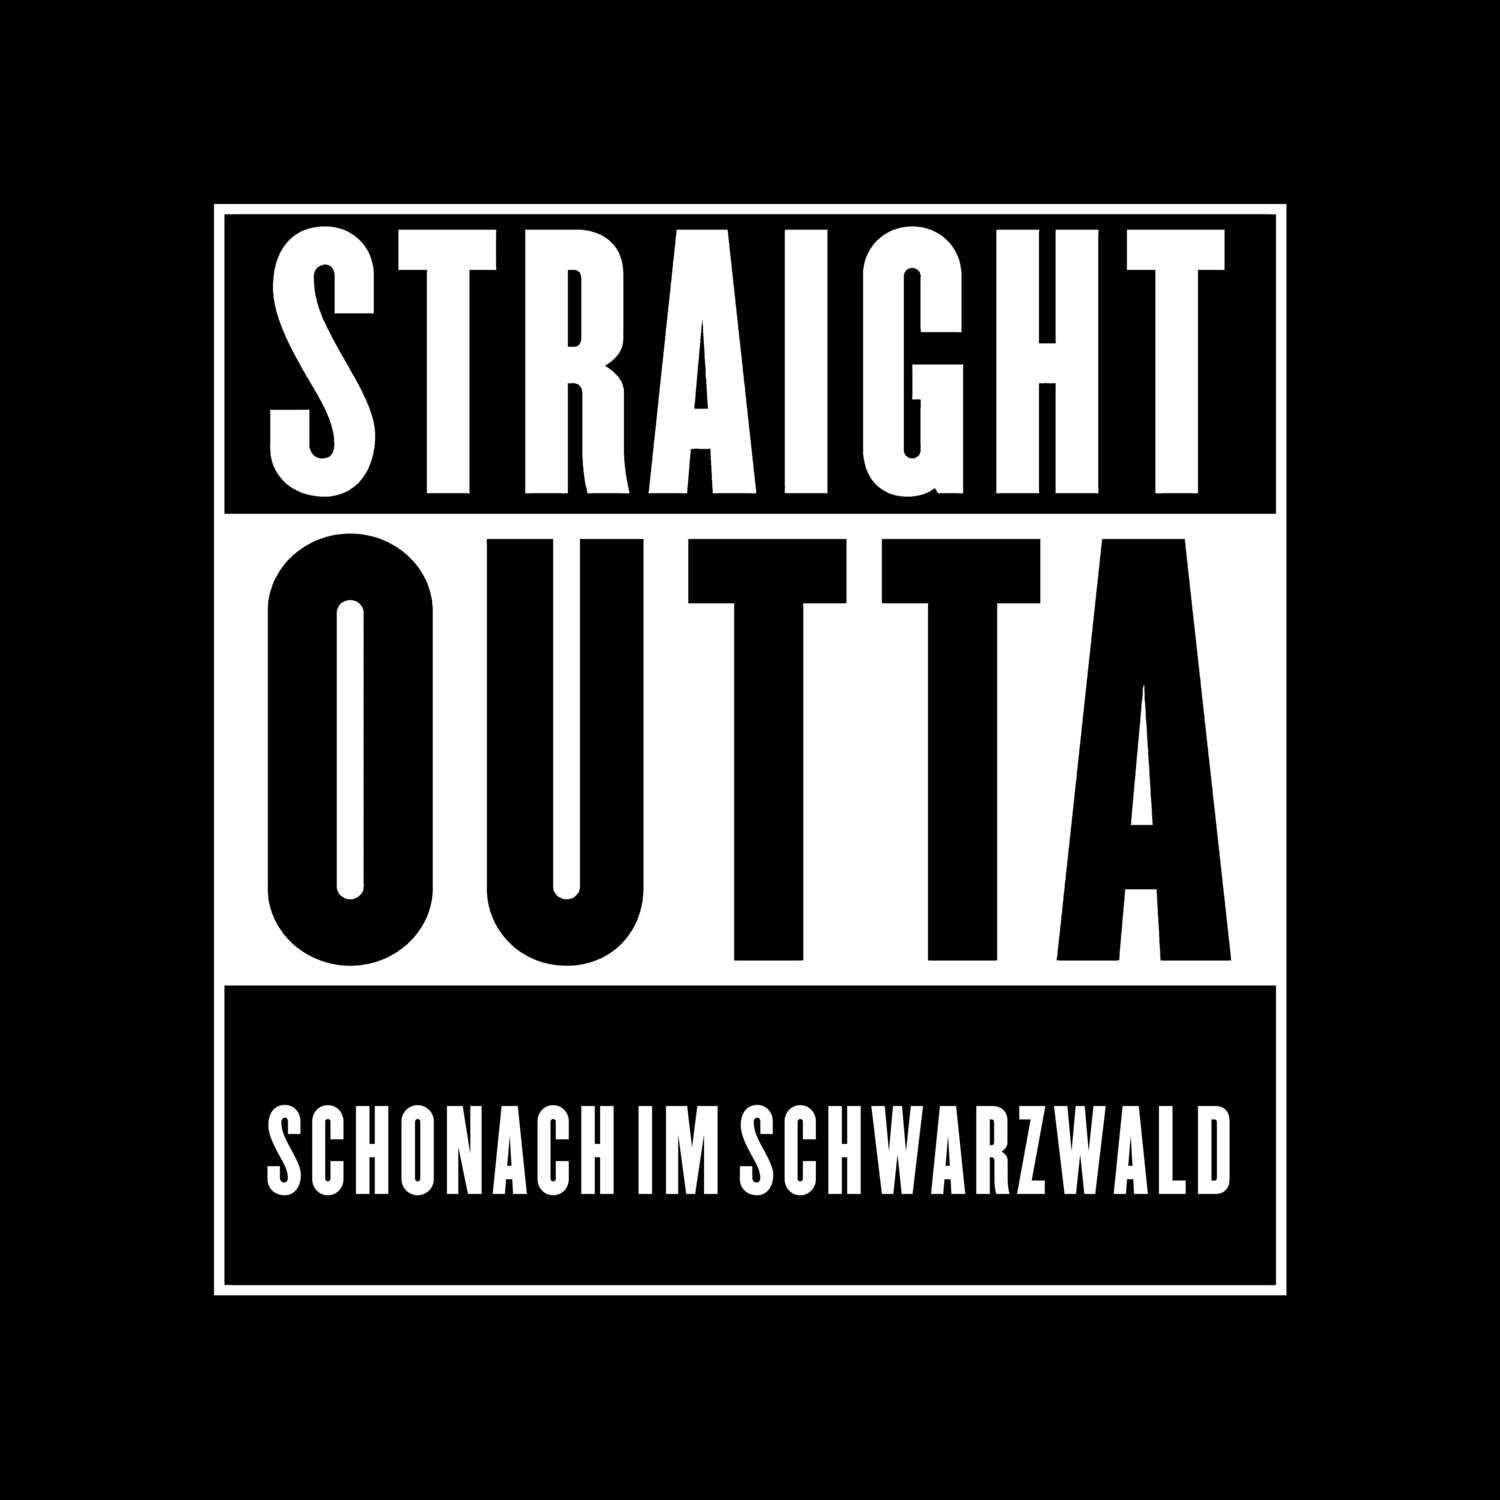 Schonach im Schwarzwald T-Shirt »Straight Outta«